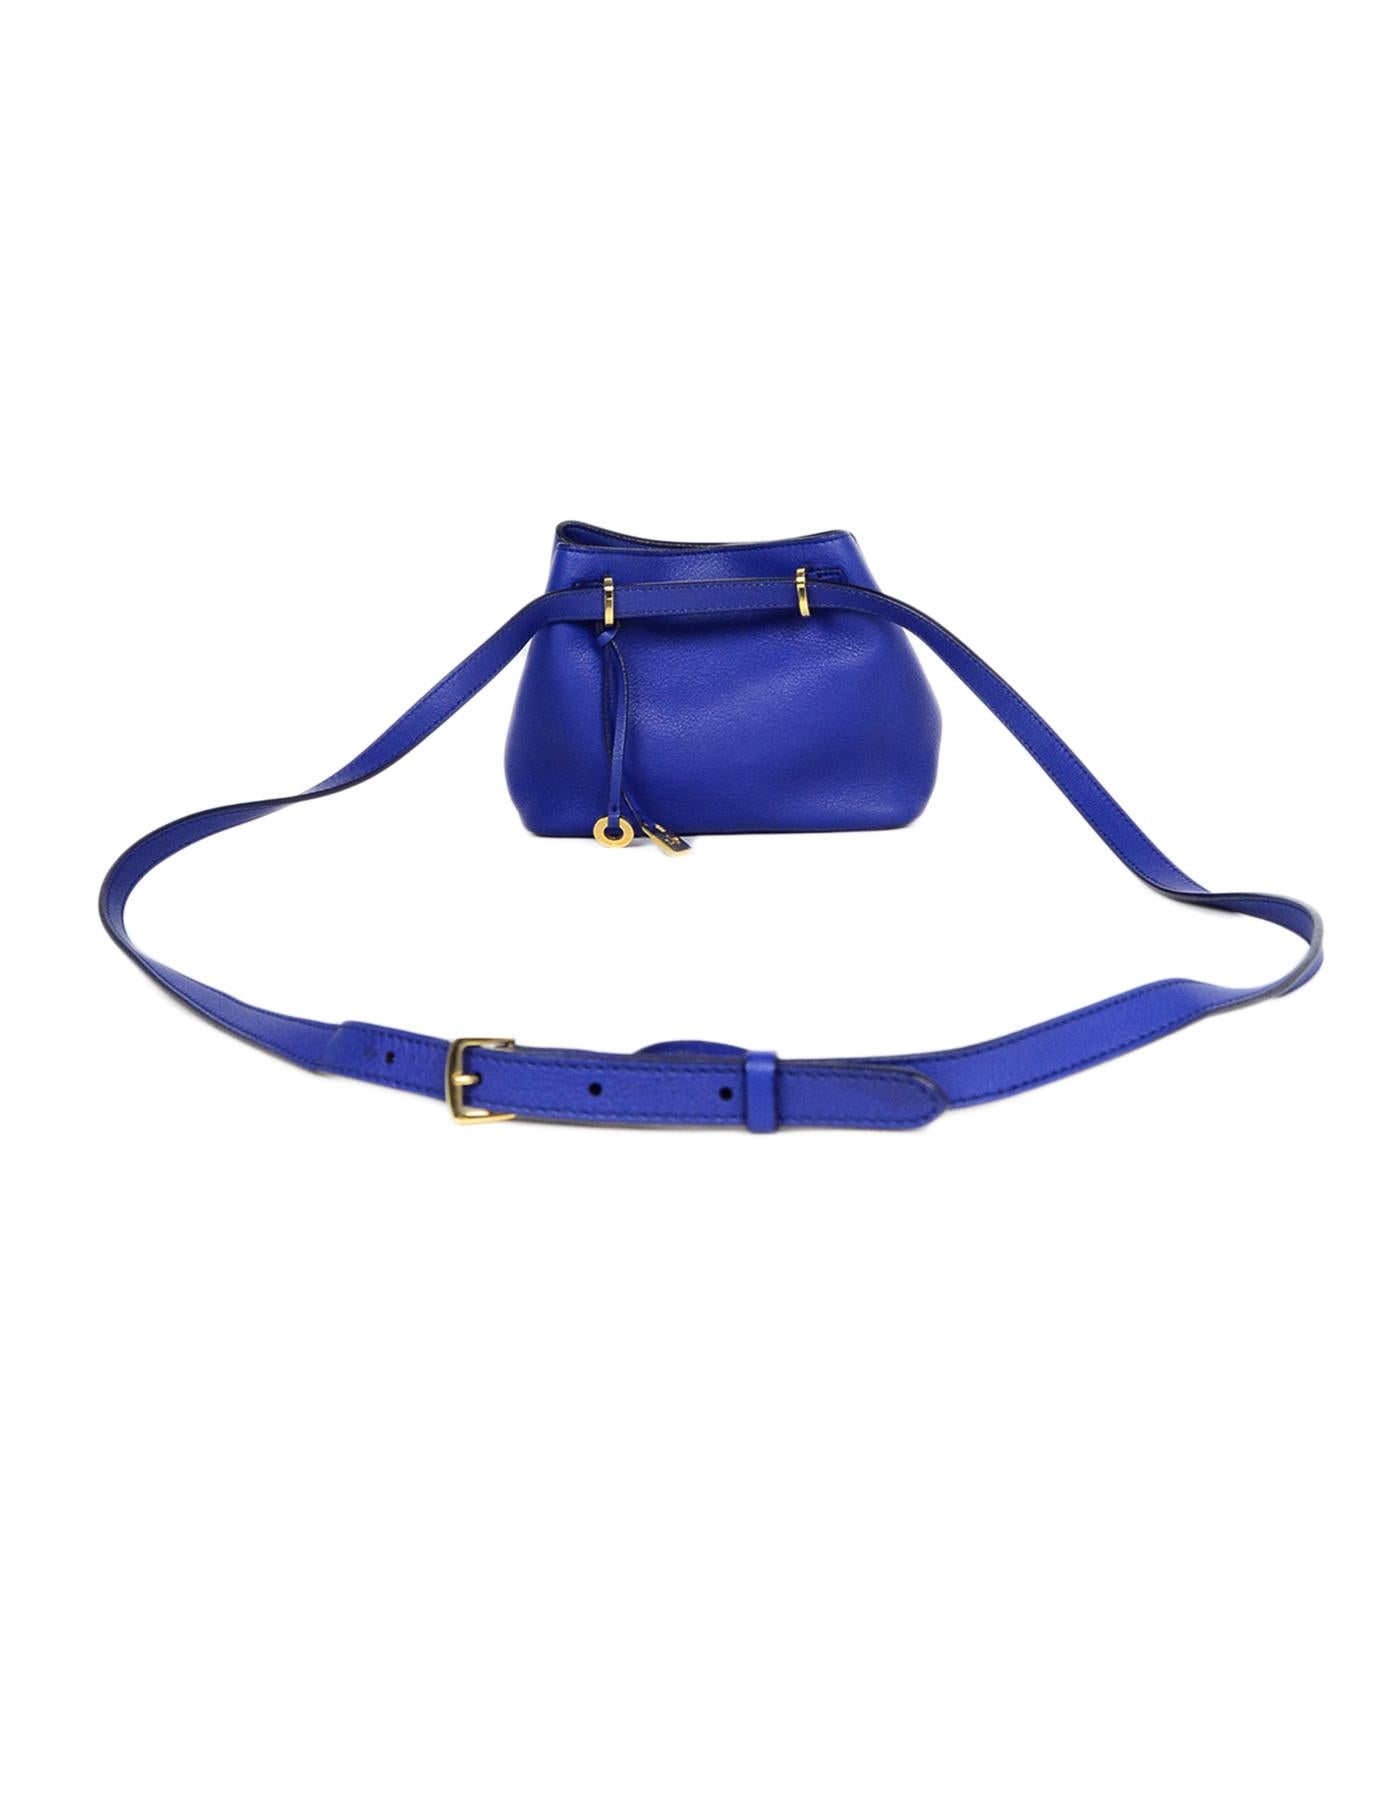 cobalt blue leather bag